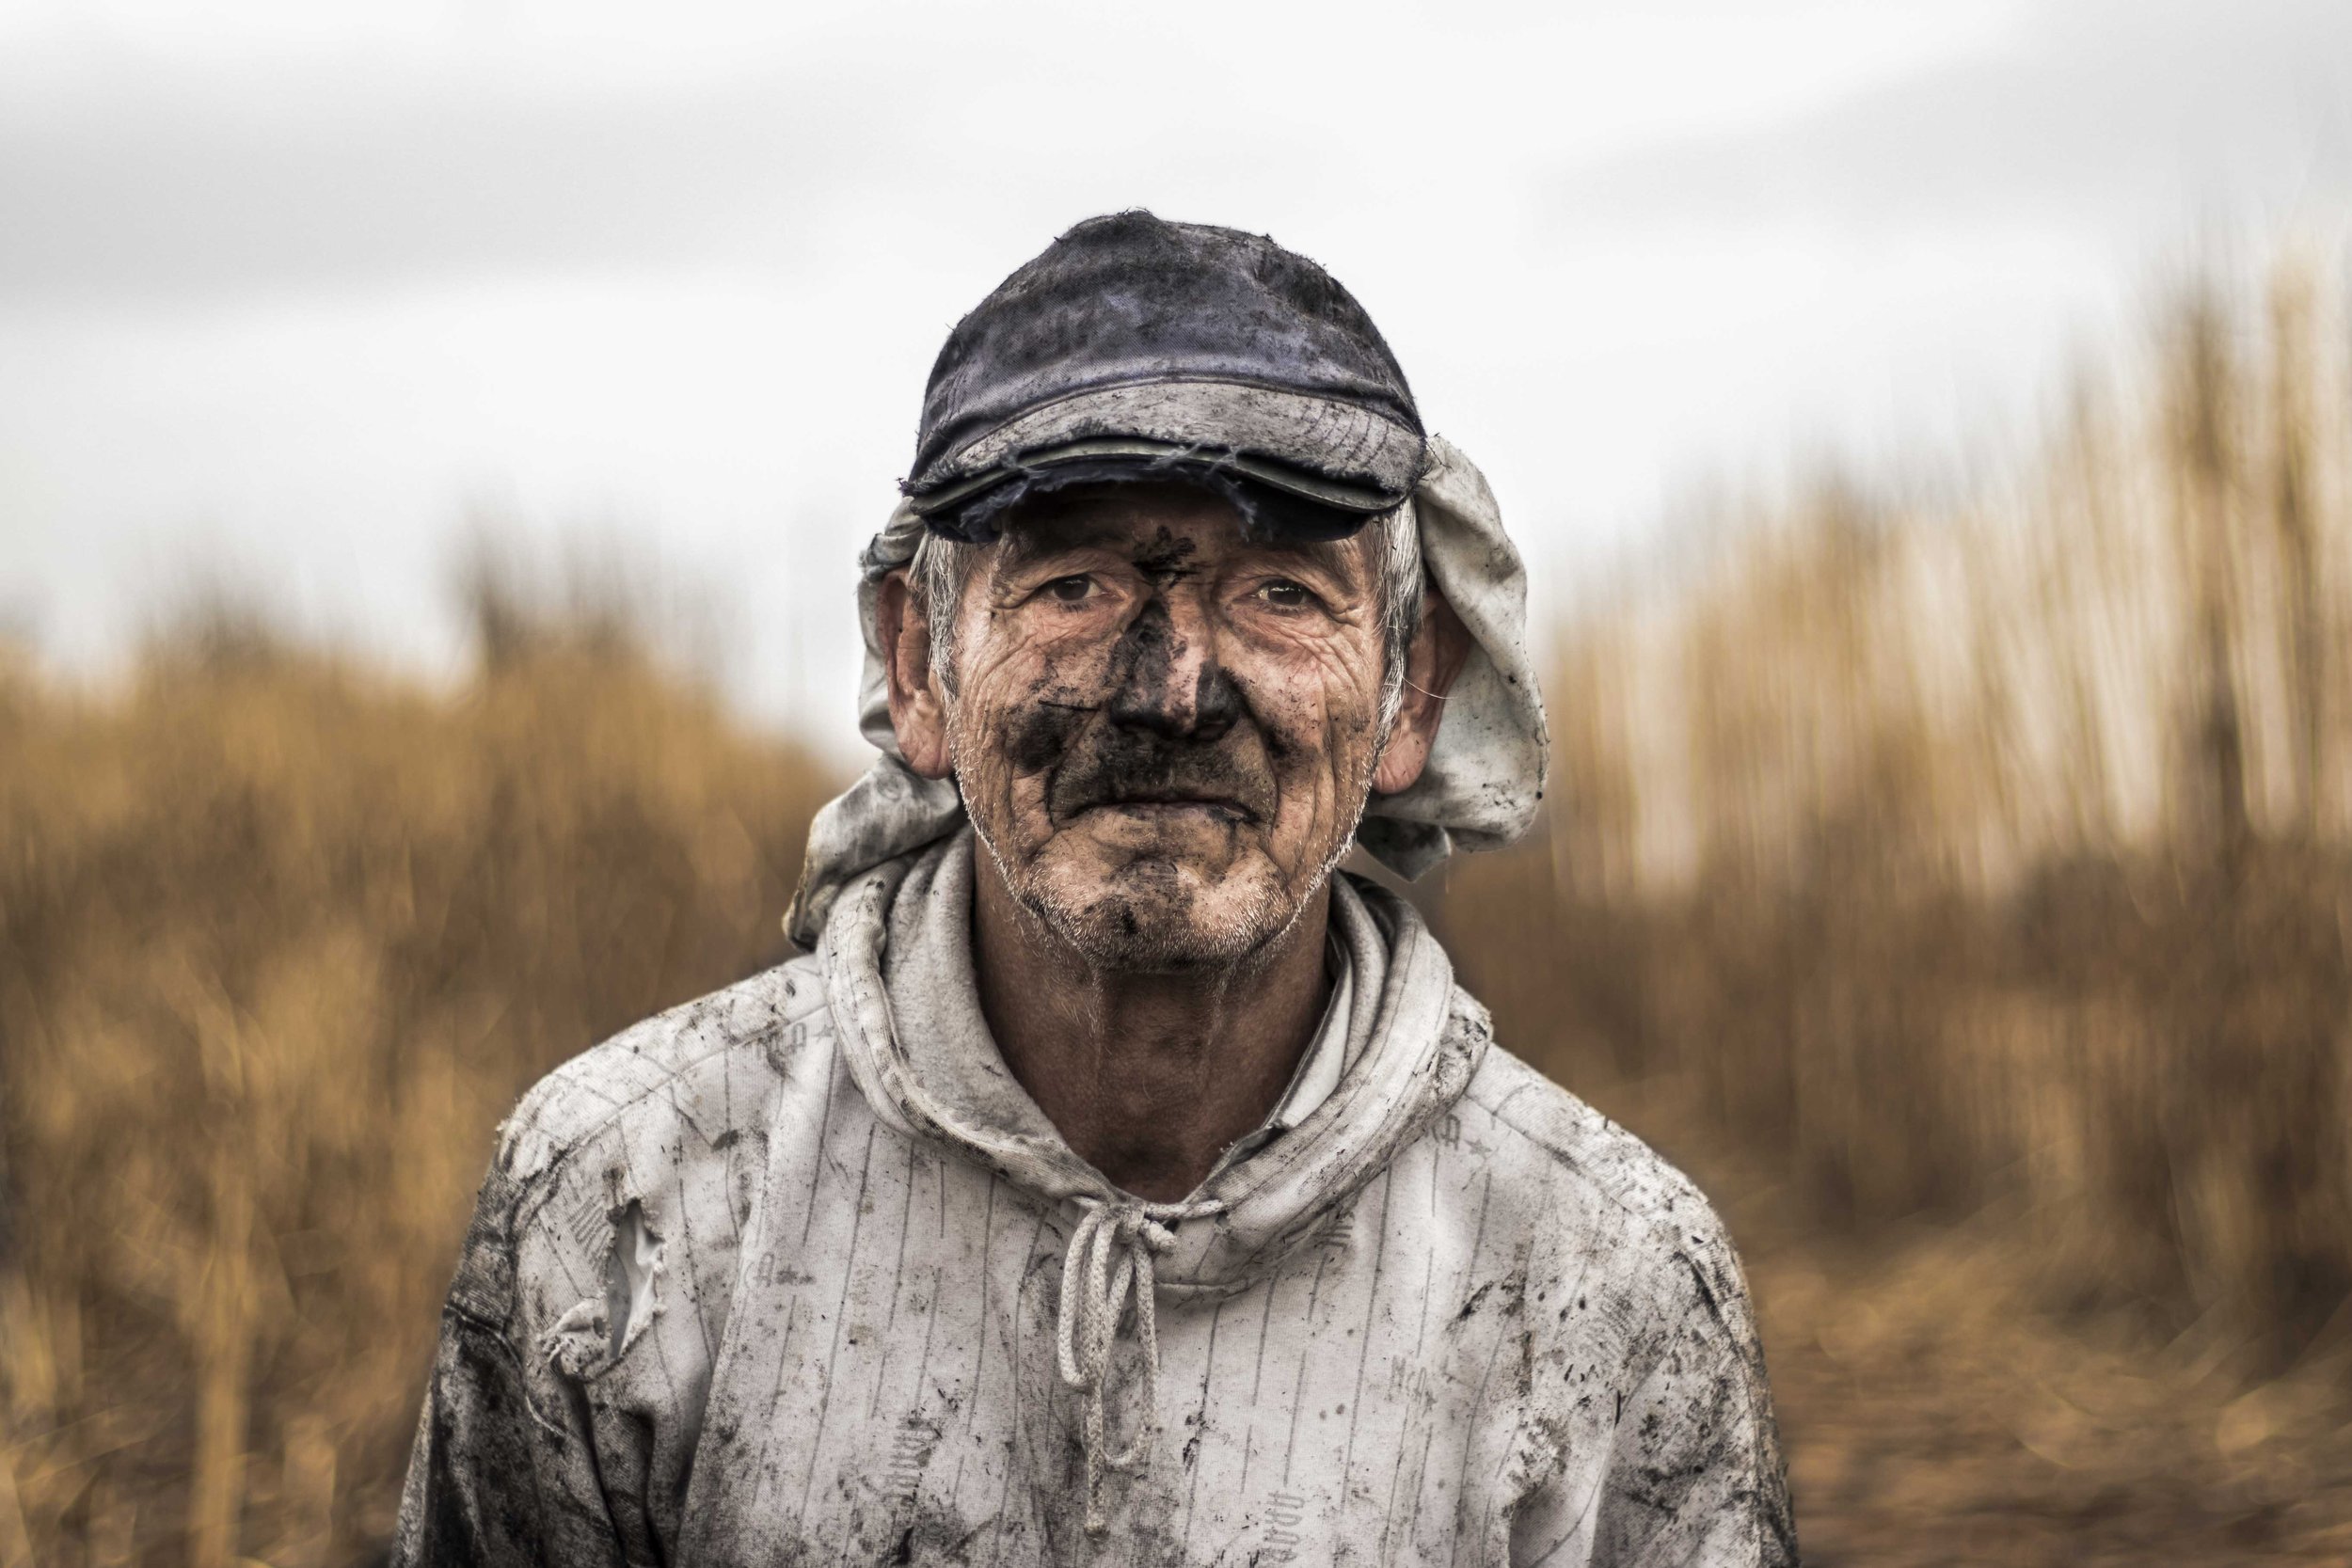  Retrato a Julio Soria, trabajador rural. 